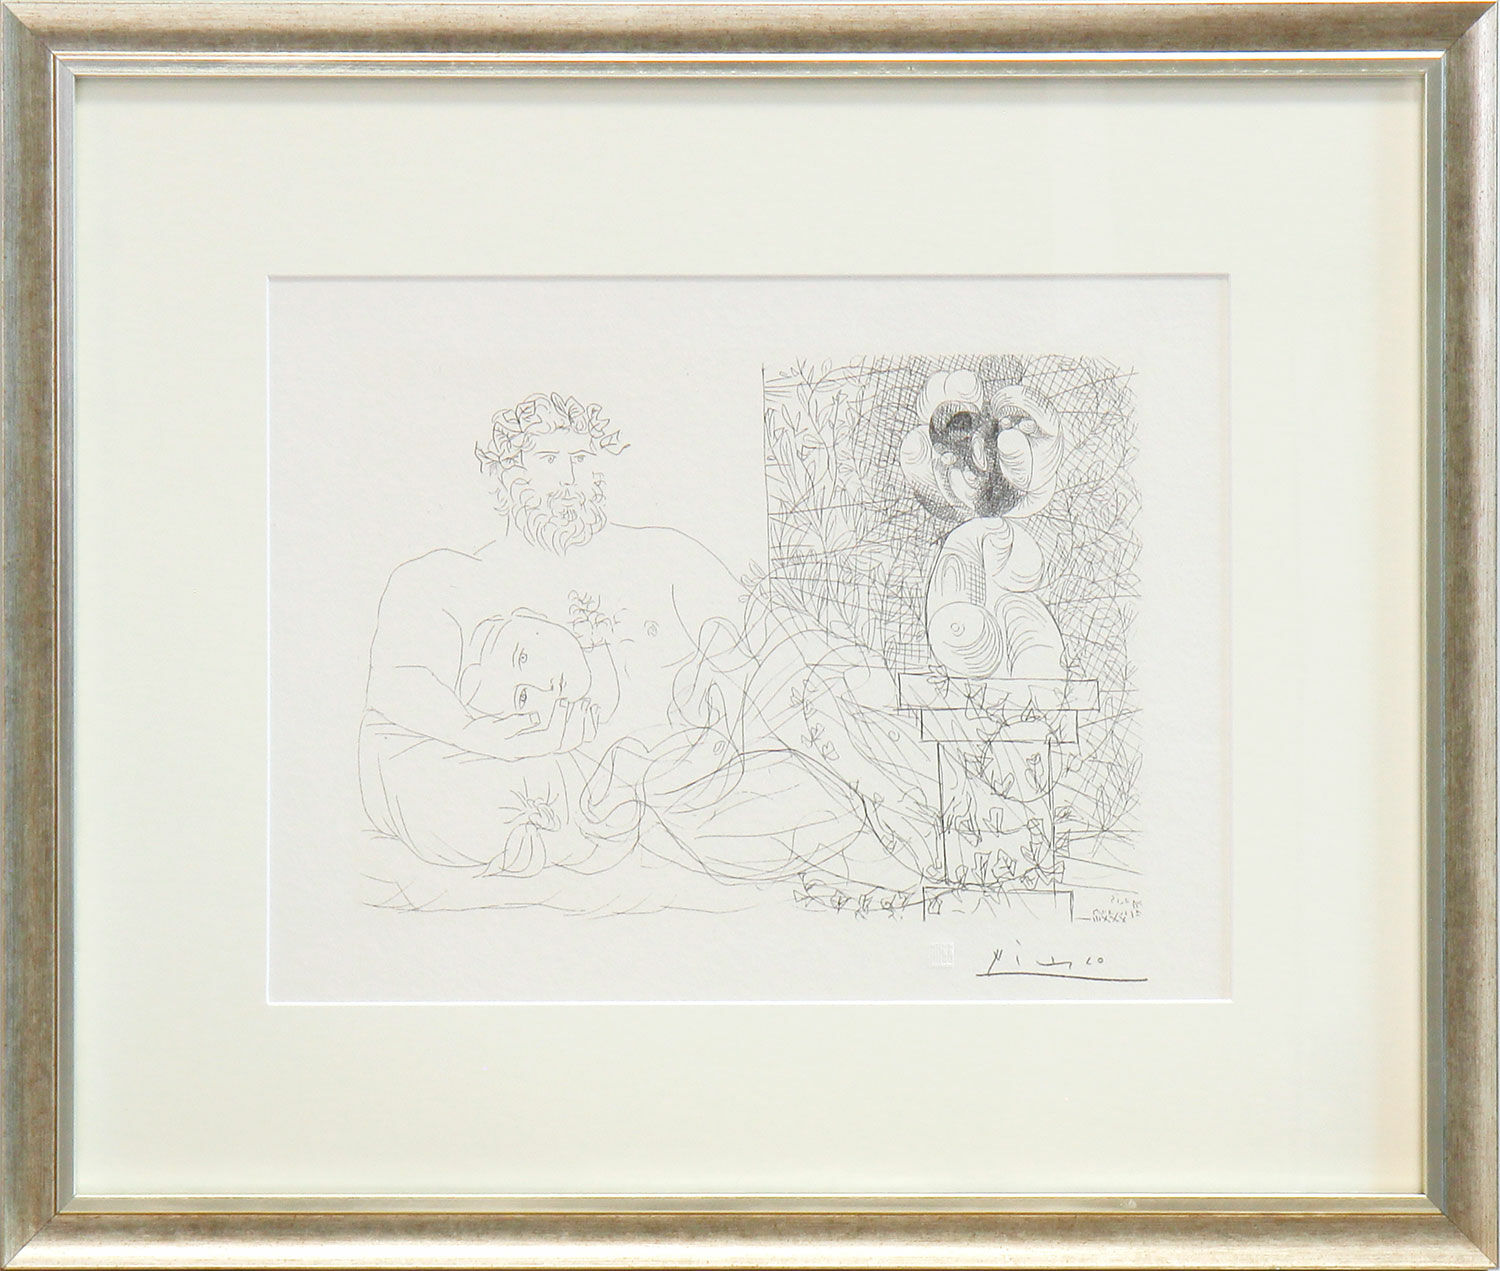 Picture "Sculpteur et son Modèle avec un Buste sur une Colonne" - from the "Suite Vollard" (1992), framed by Pablo Picasso